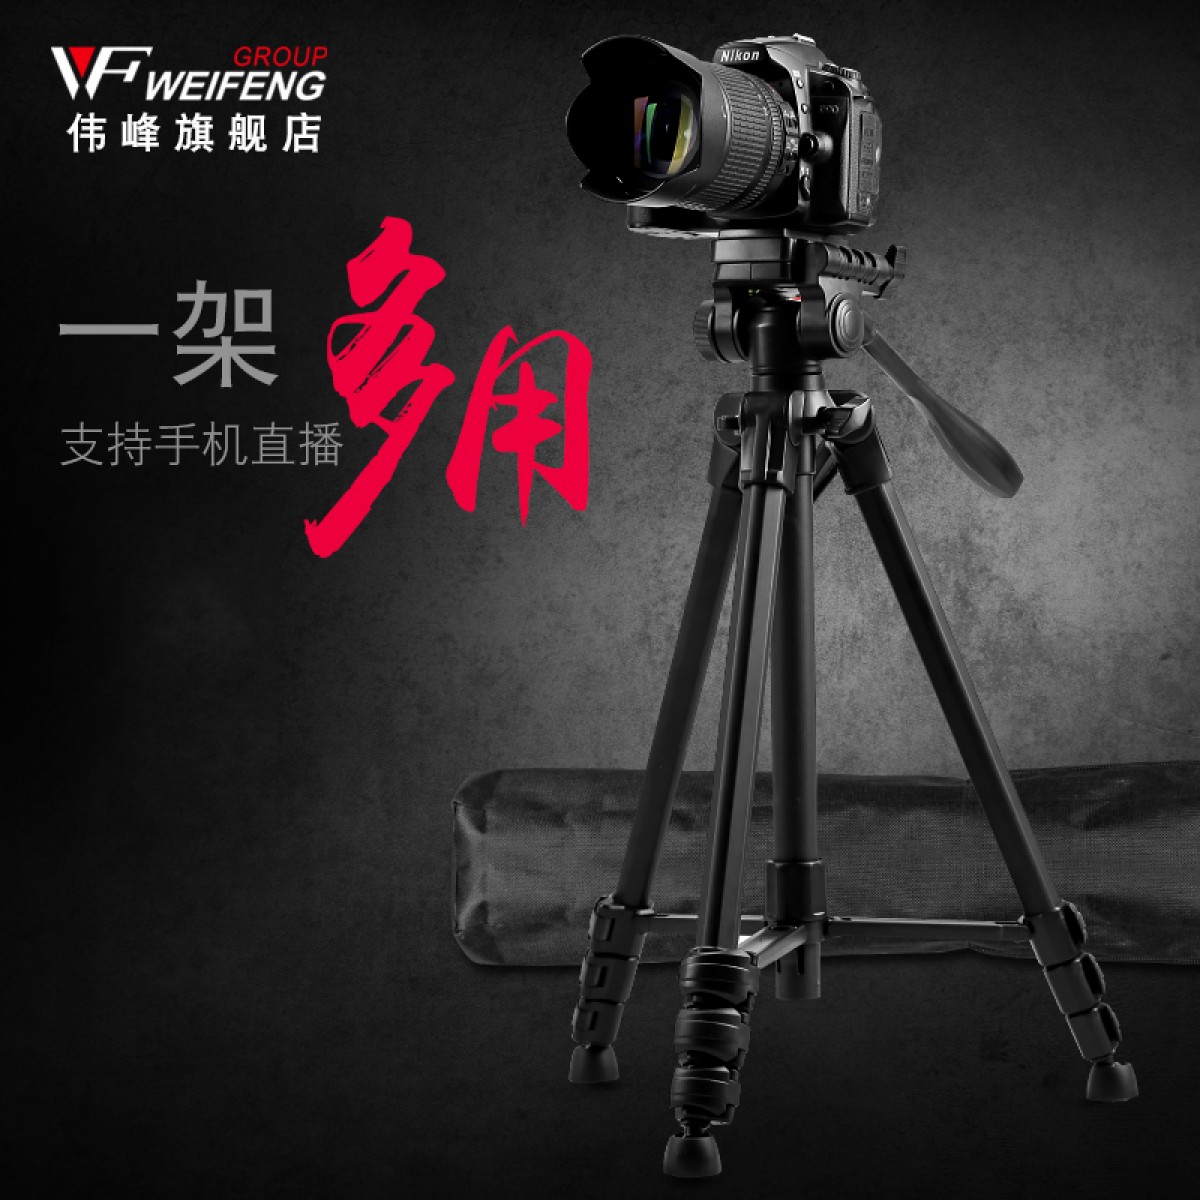 伟峰3320A专业摄影摄像三脚架微单反相机手机便携脚架照相三角架